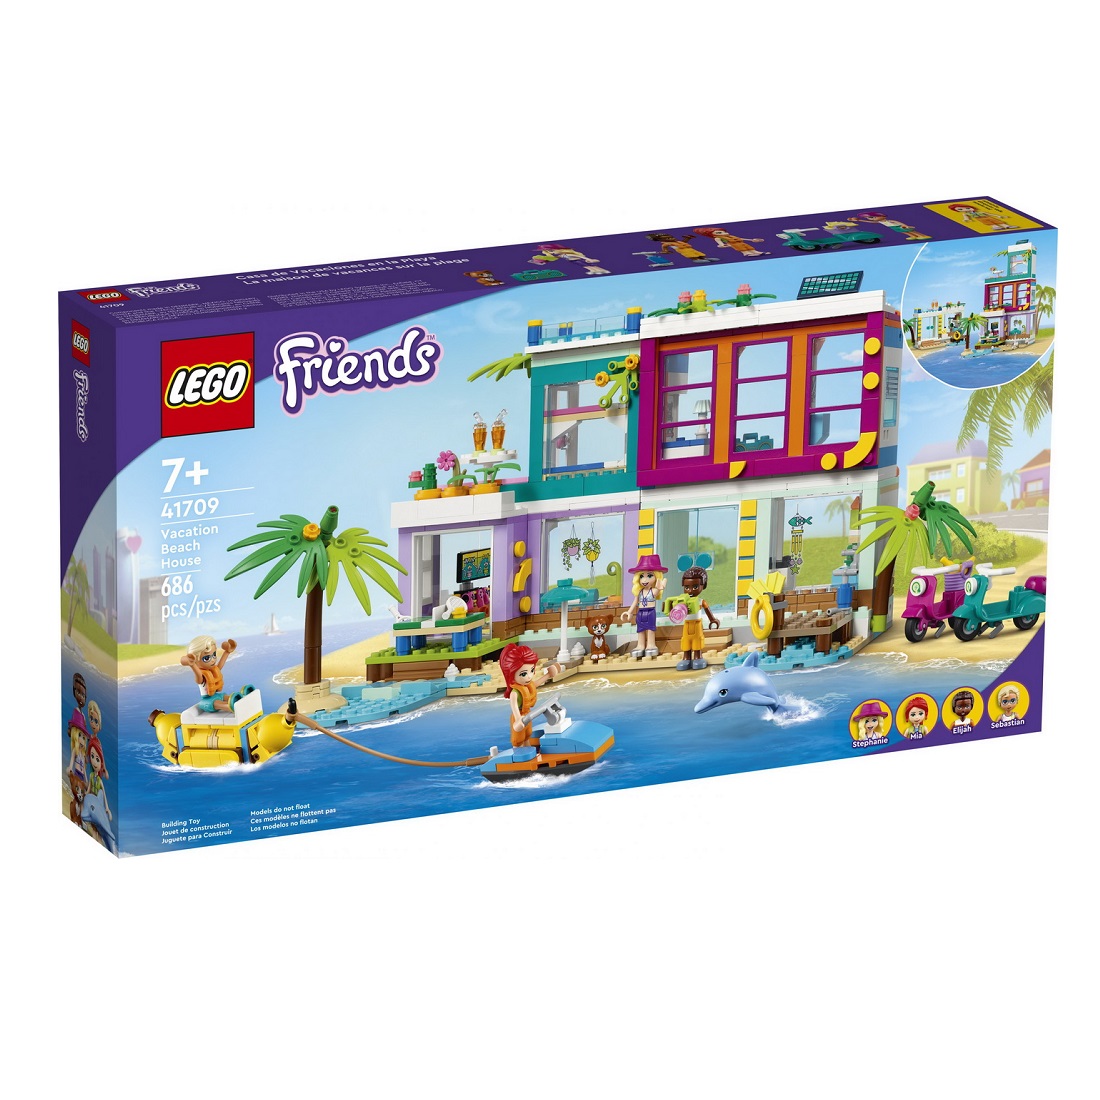 Casa de vacanta de pe plaja Lego Friends, 41709, Lego